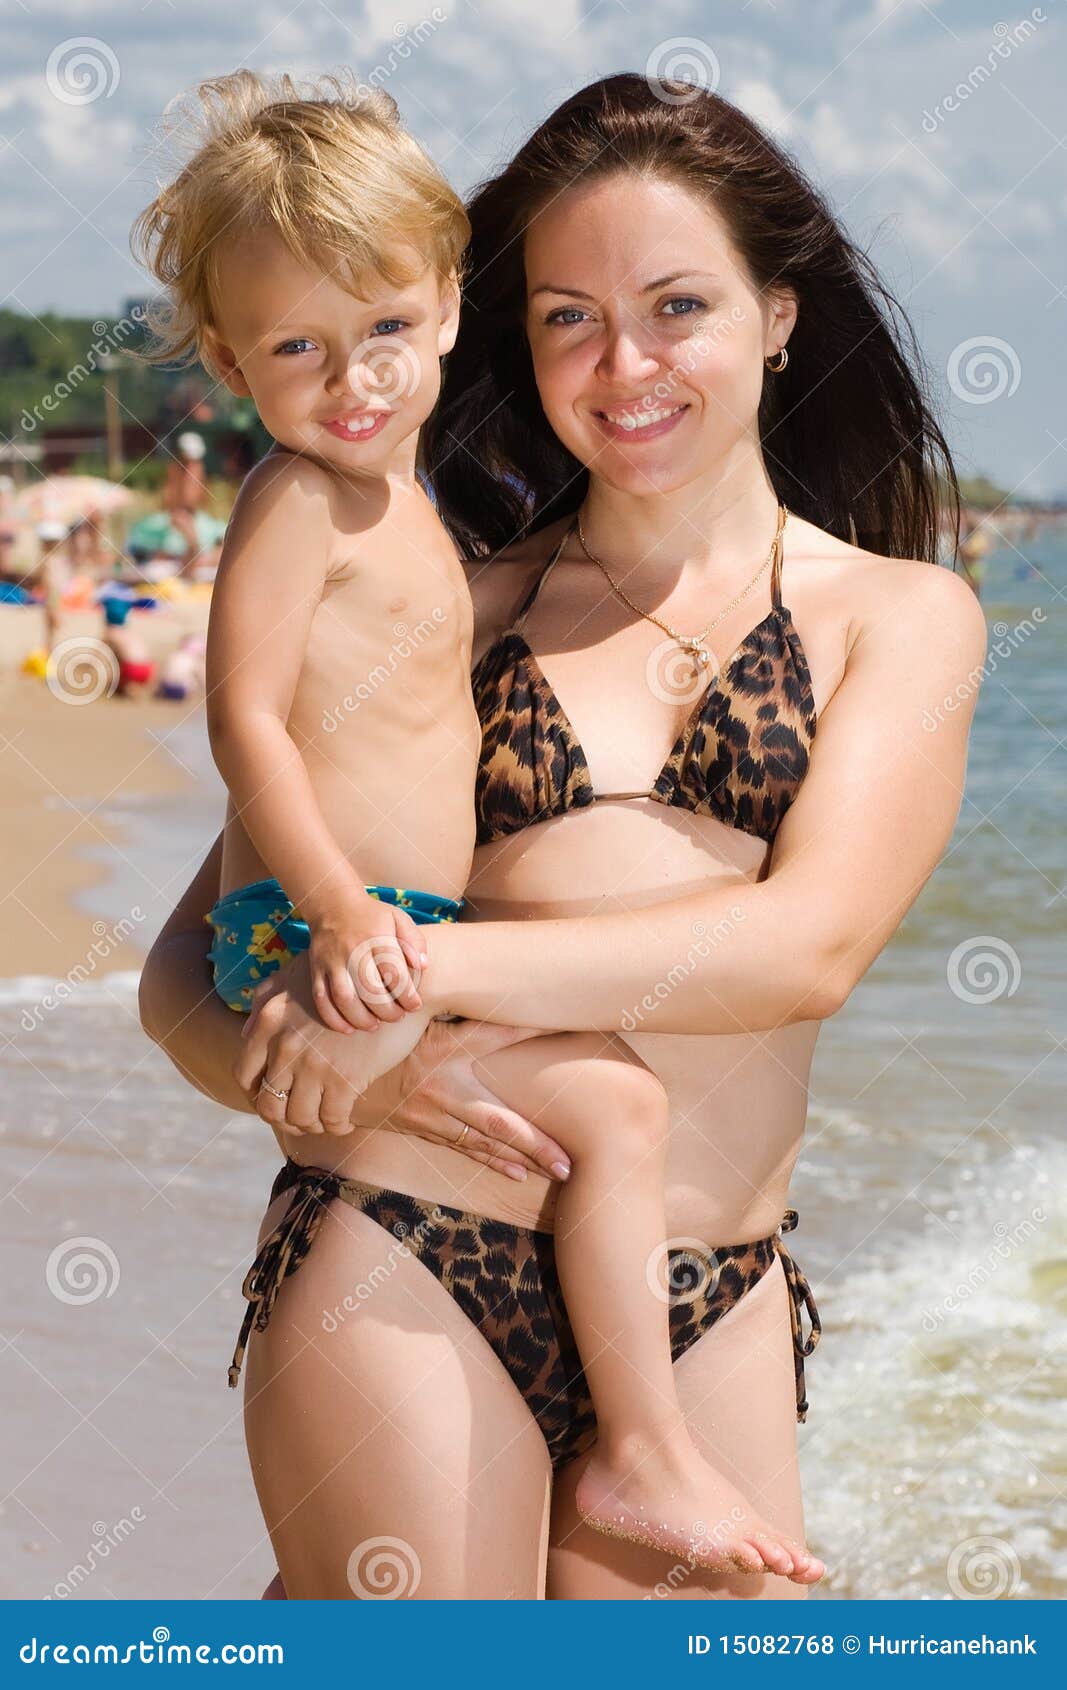 Нудистки мама с дочкой